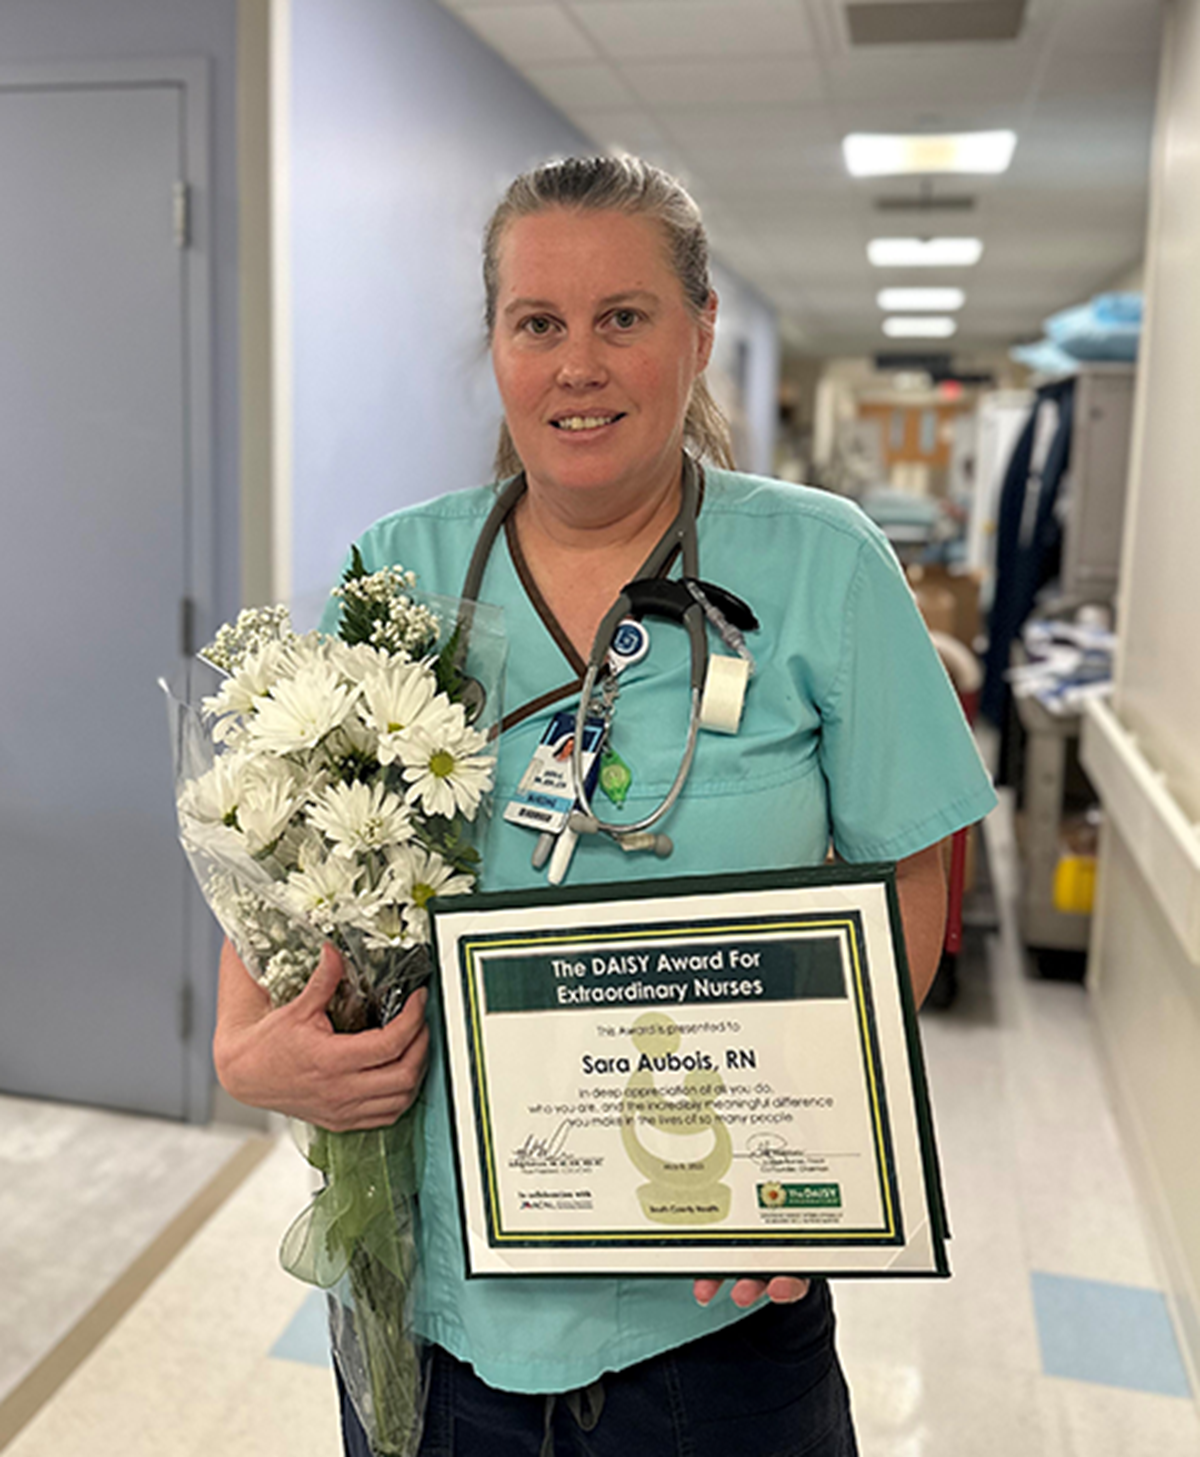 Sara Aubois, RN receives DAISY Award for Extraordinary Nurses